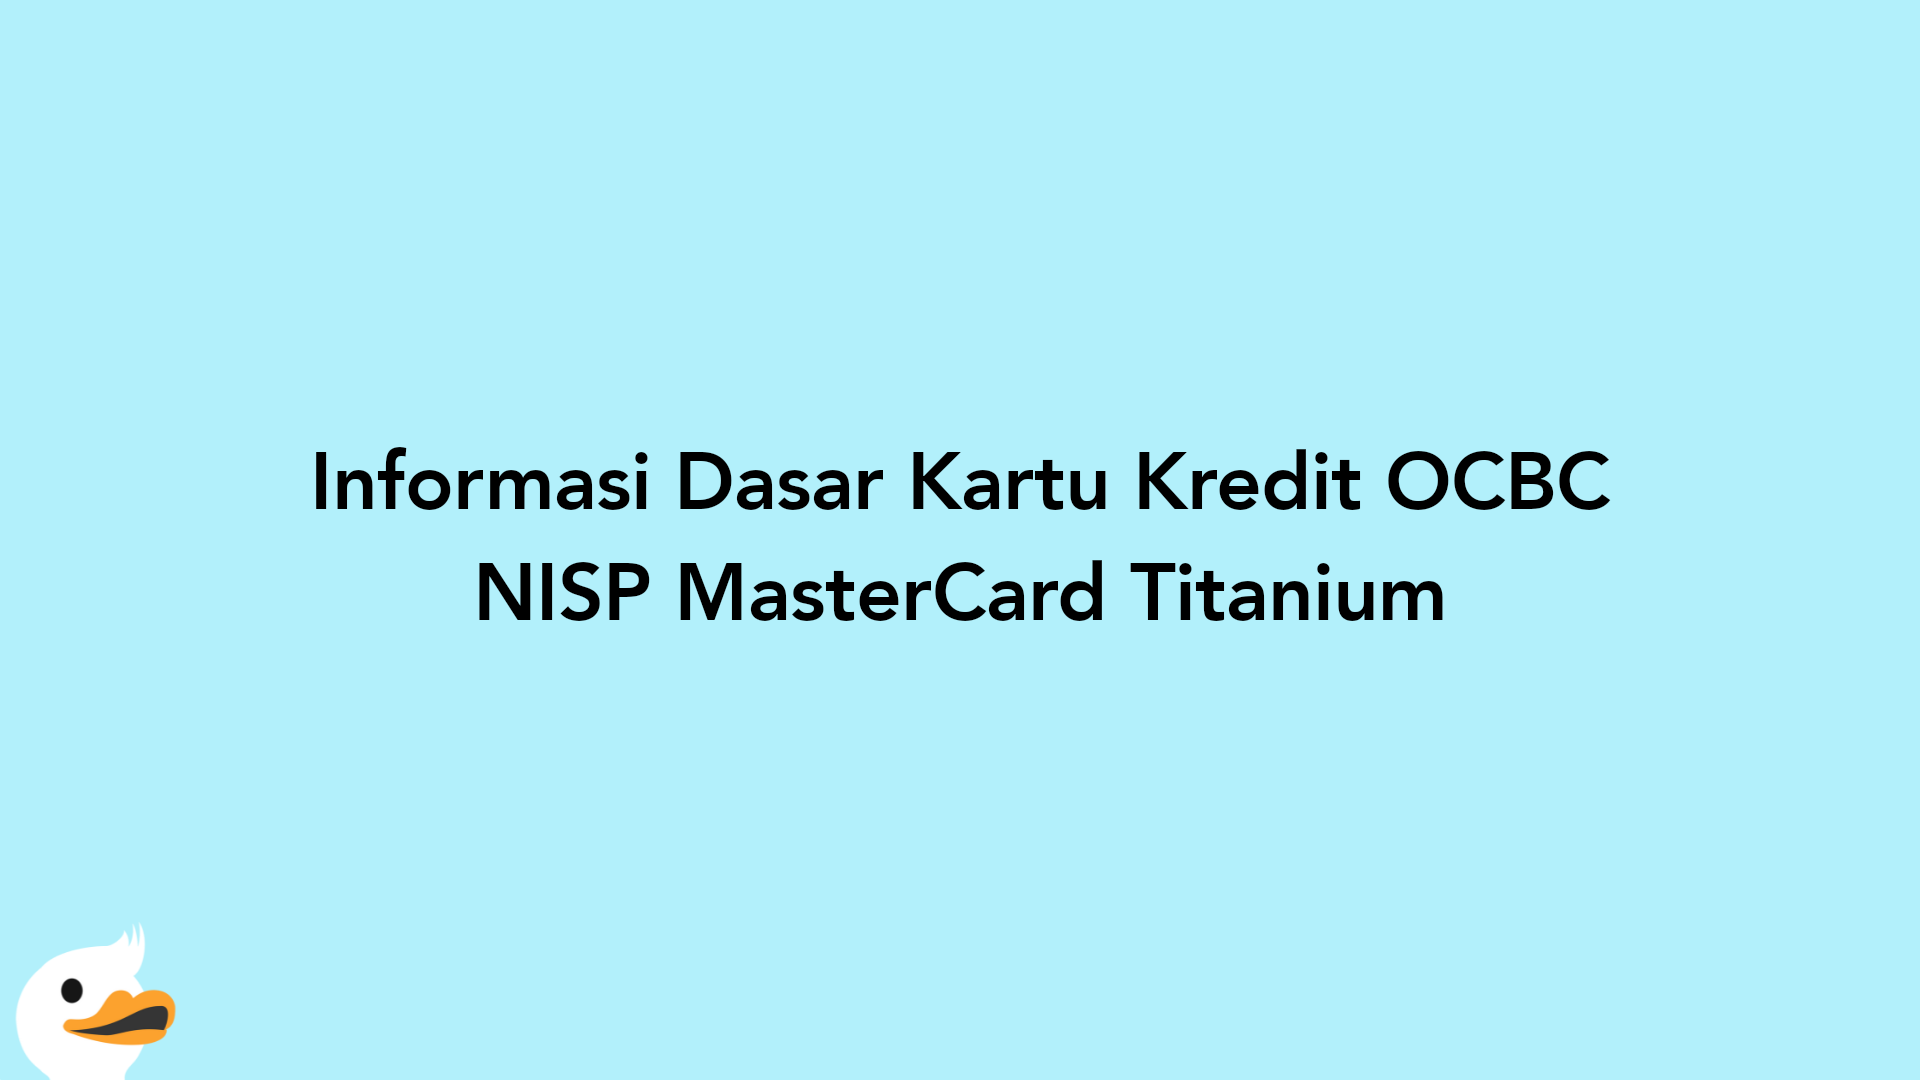 Informasi Dasar Kartu Kredit OCBC NISP MasterCard Titanium